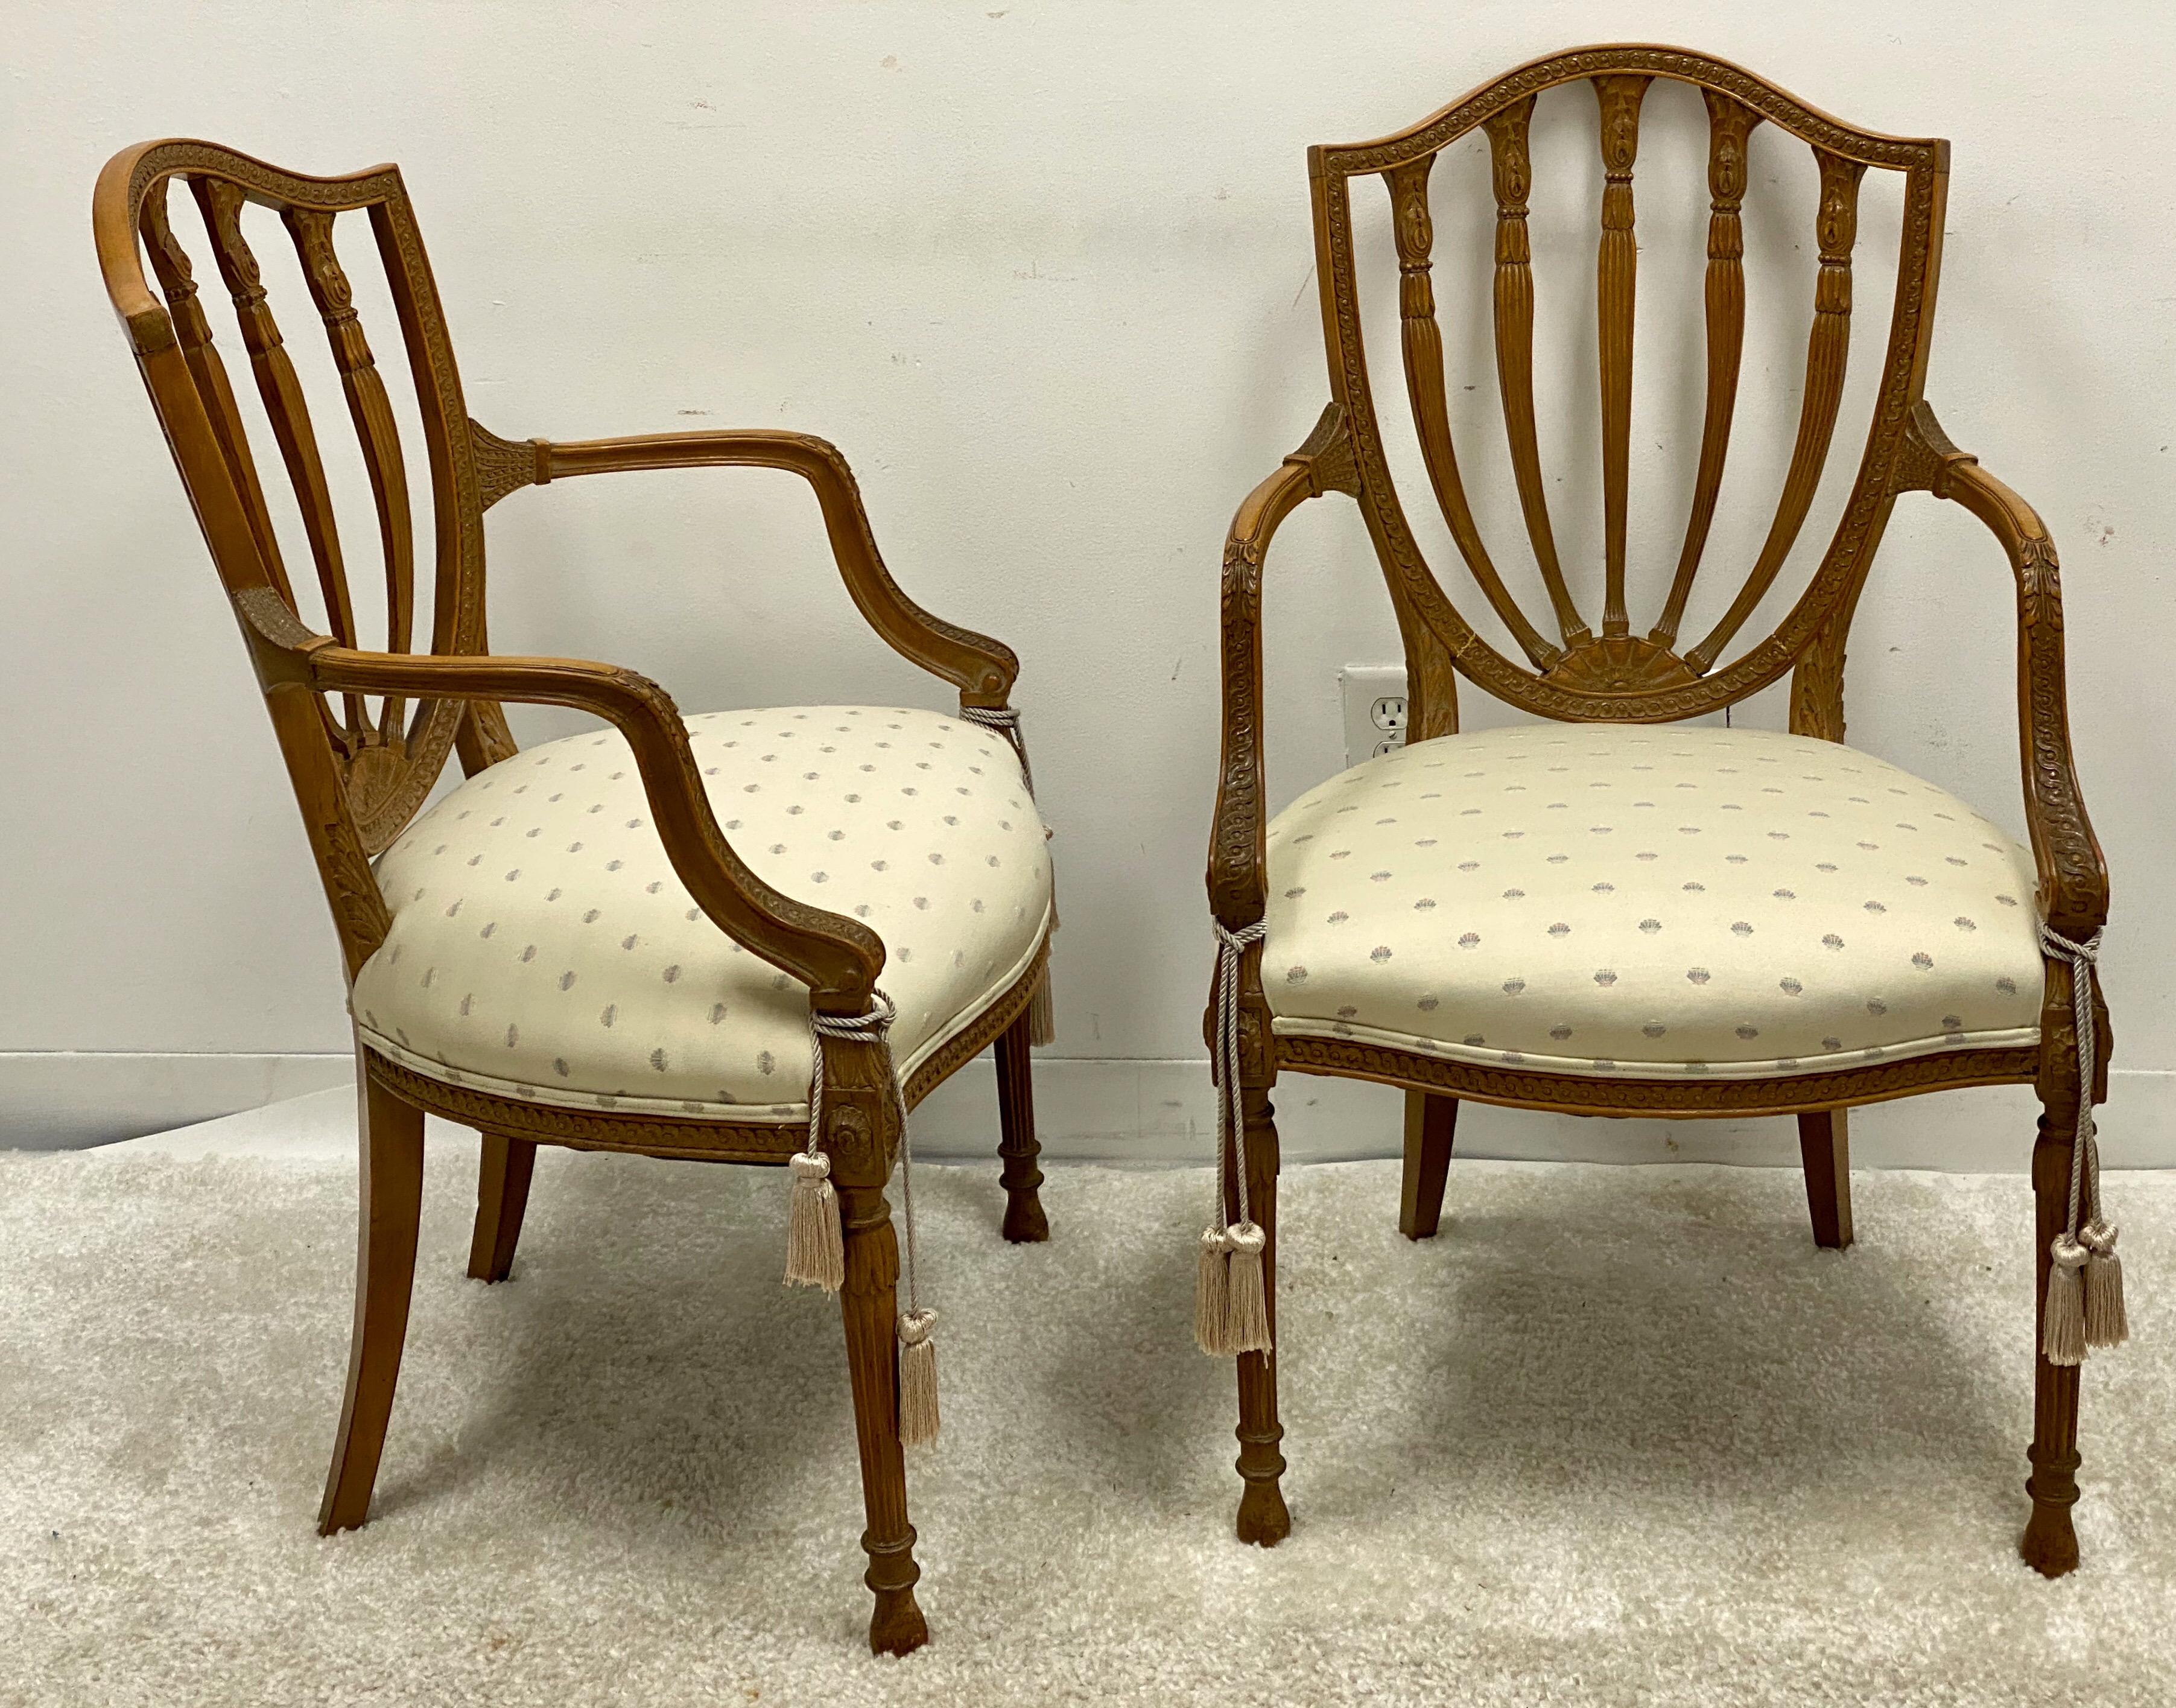 Dies ist ein Paar geschnitzter Stühle im Adam-Stil mit Rückenlehne von Baker Furniture. Sie sind gekennzeichnet und in sehr gutem Zustand. Die Polsterung ist alt, aber frei von Flecken und Rissen.